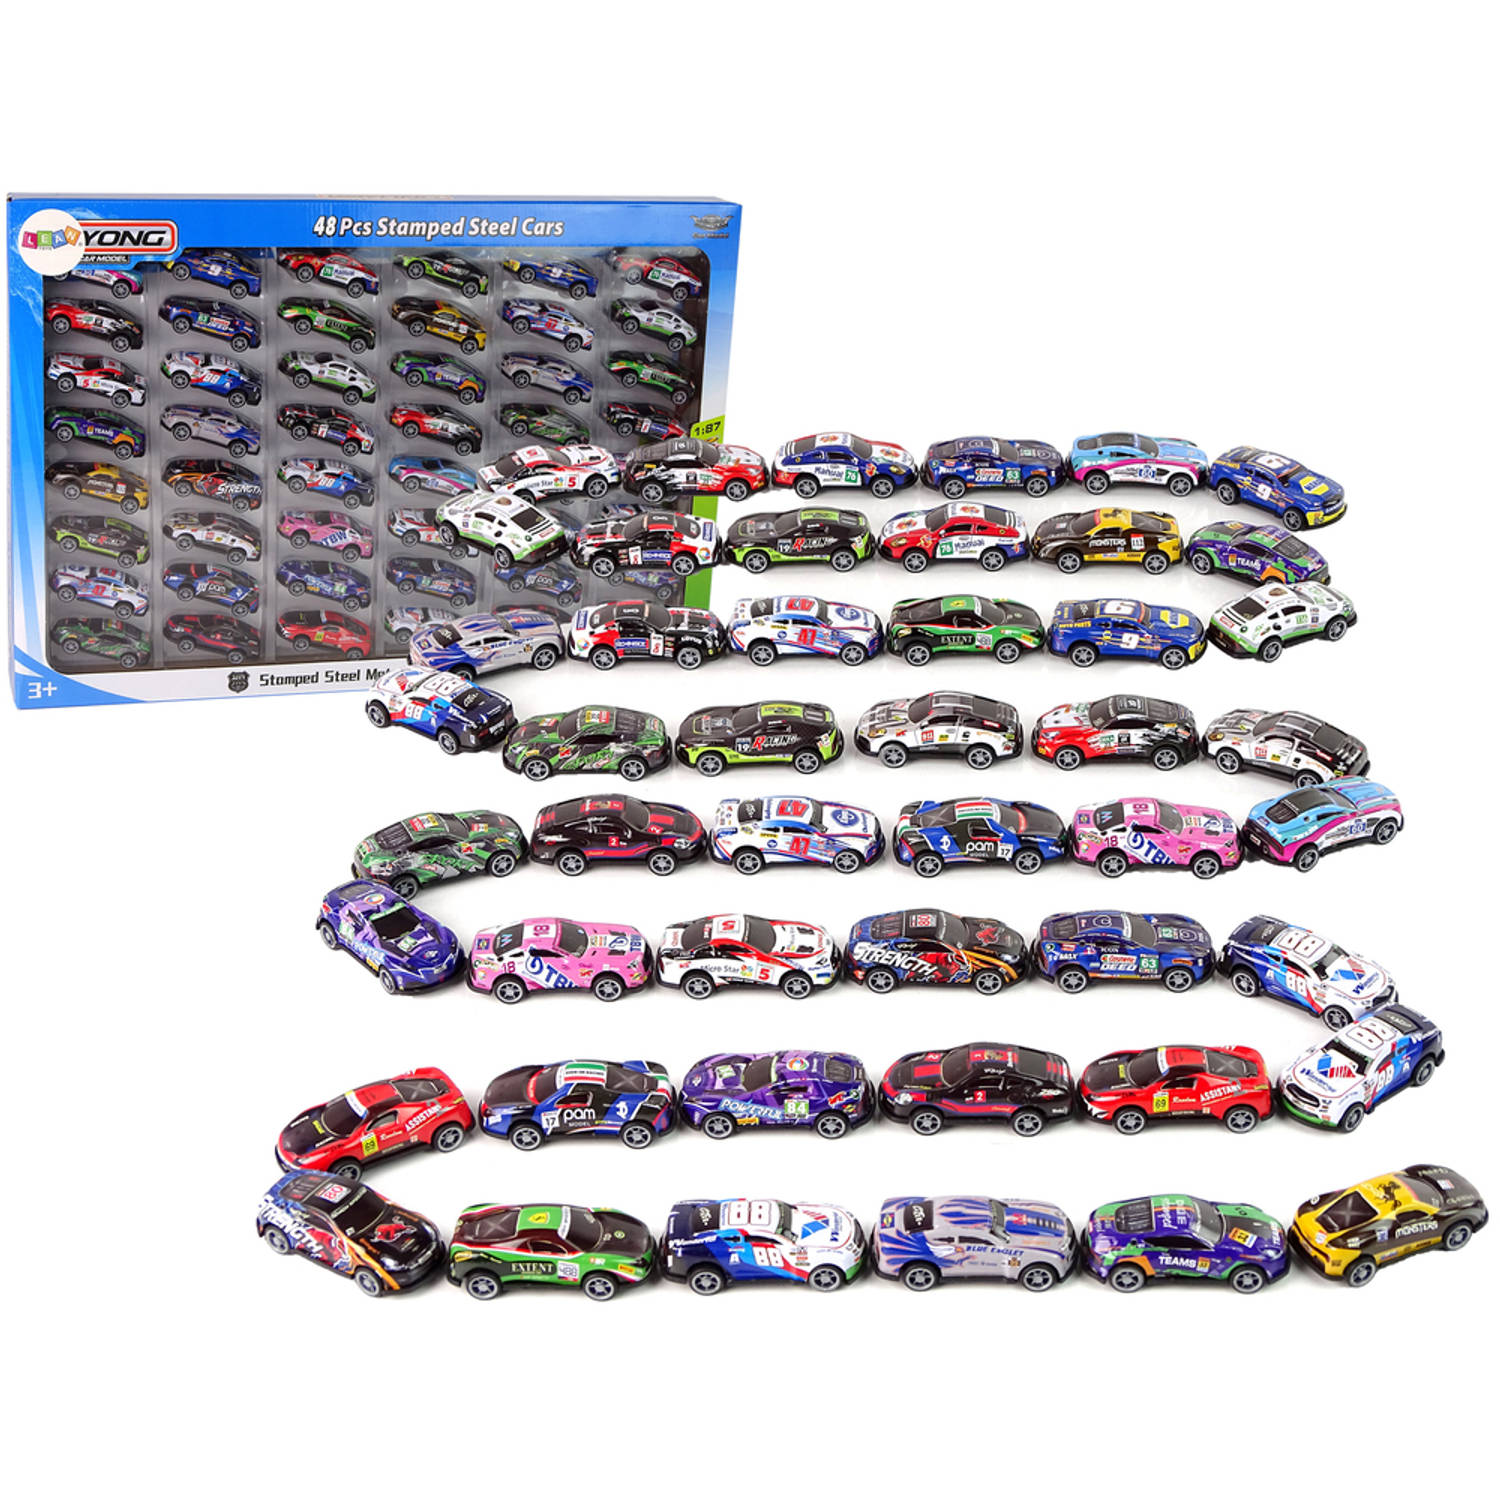 XXL 48-delige metalen auto set met pull back functie - Auto speelgoed voor jongens en meisjes - WRC rally auto's - Schaal 1:87